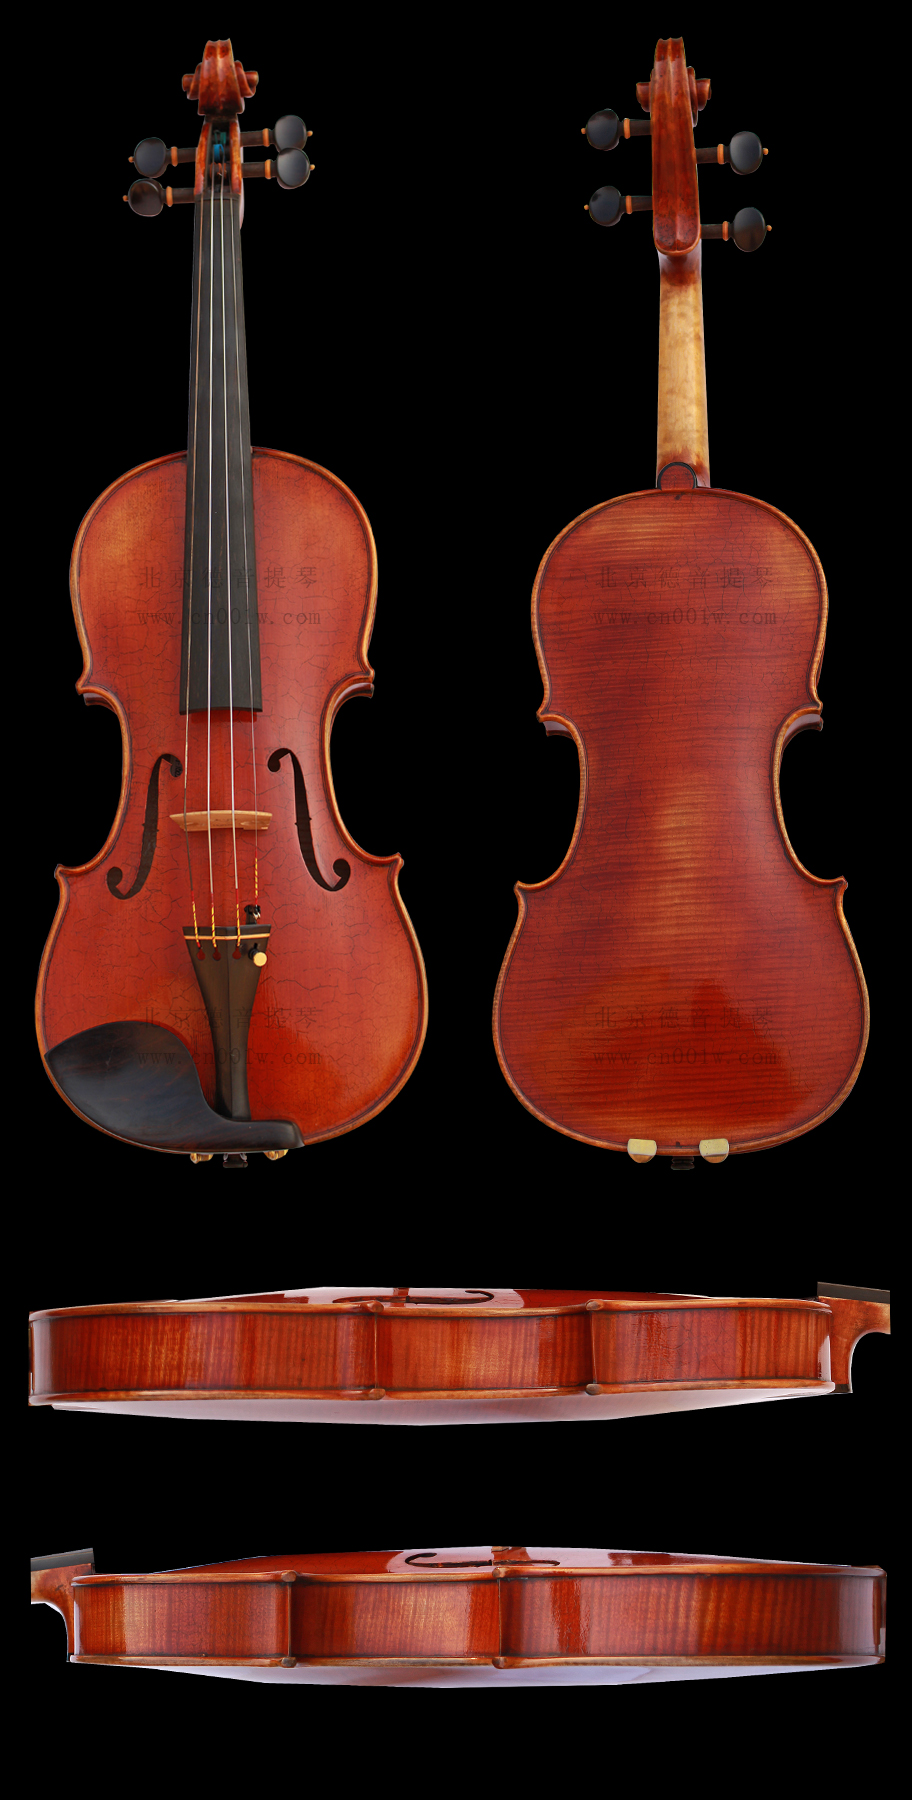 dy-160210q 产品类别:音乐会演奏级小提琴 市场价格:20000